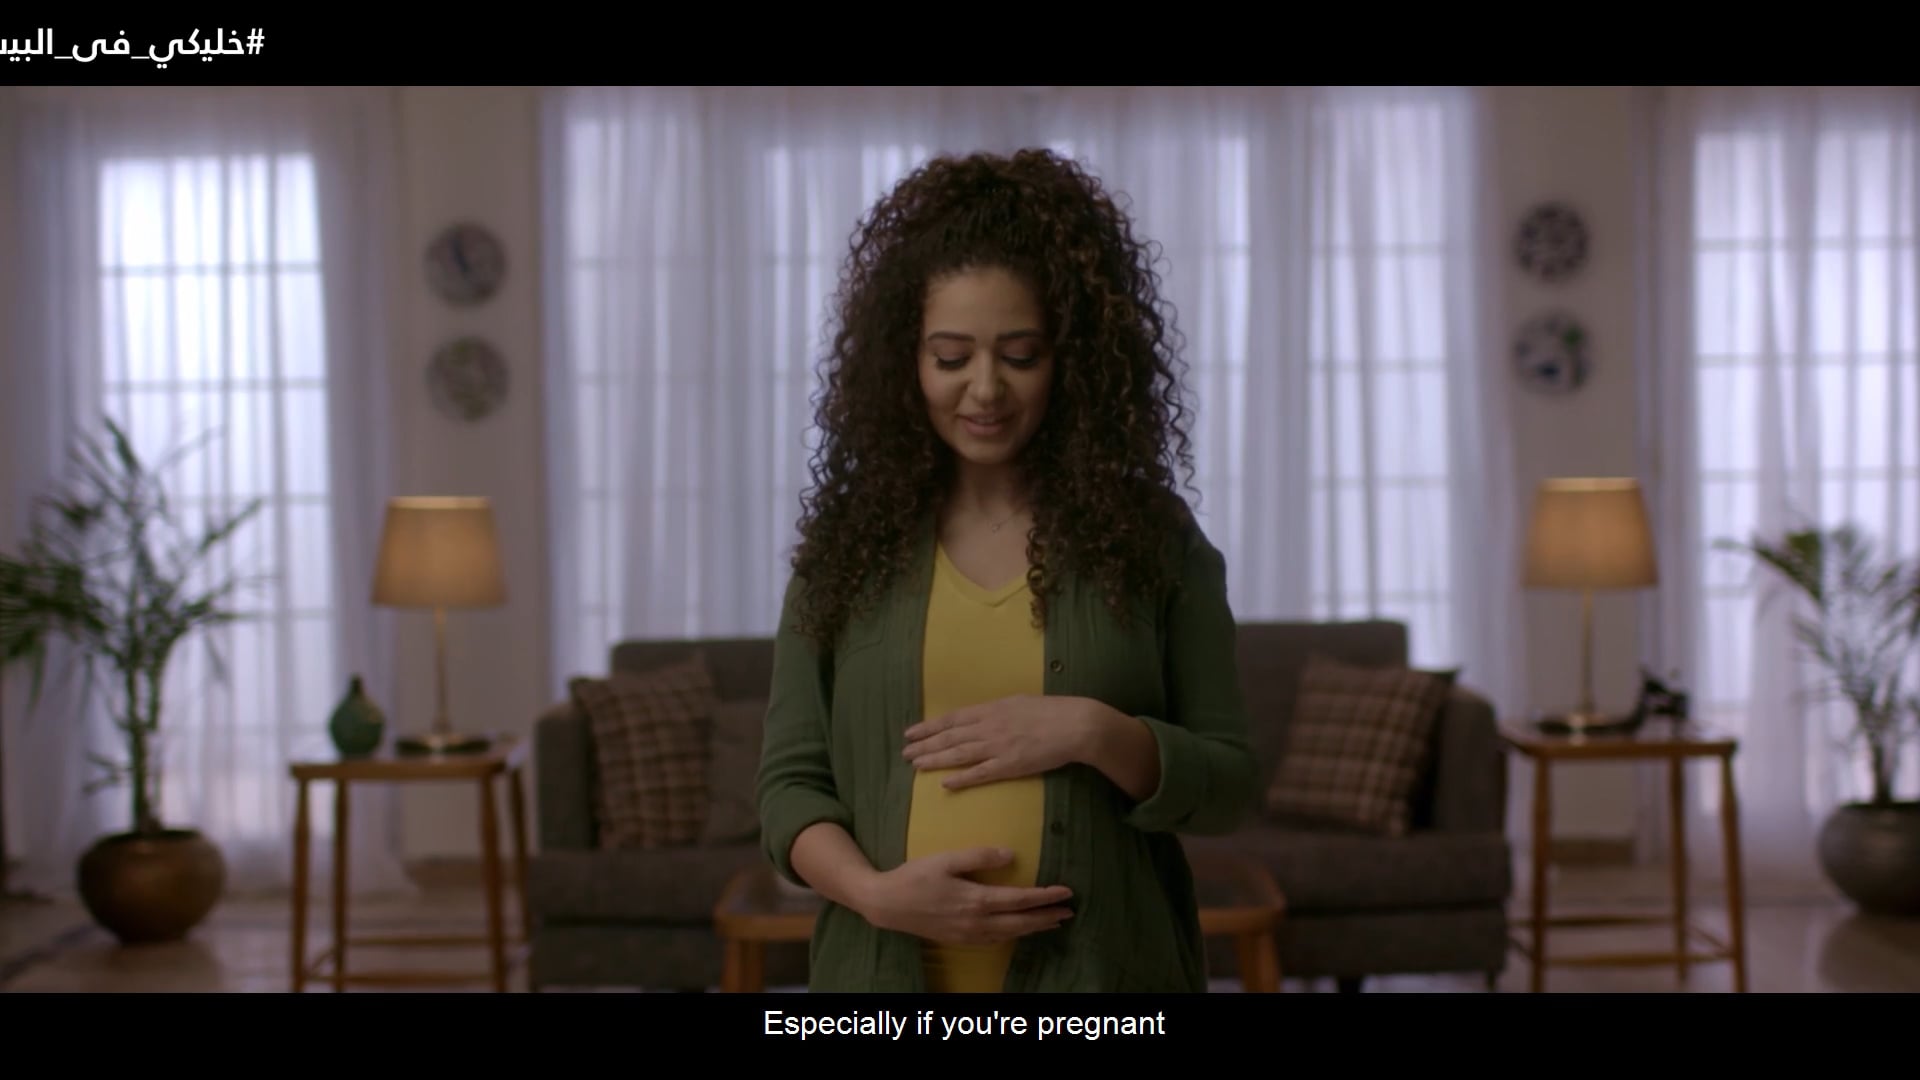 UNFPA - Pregnant Woman